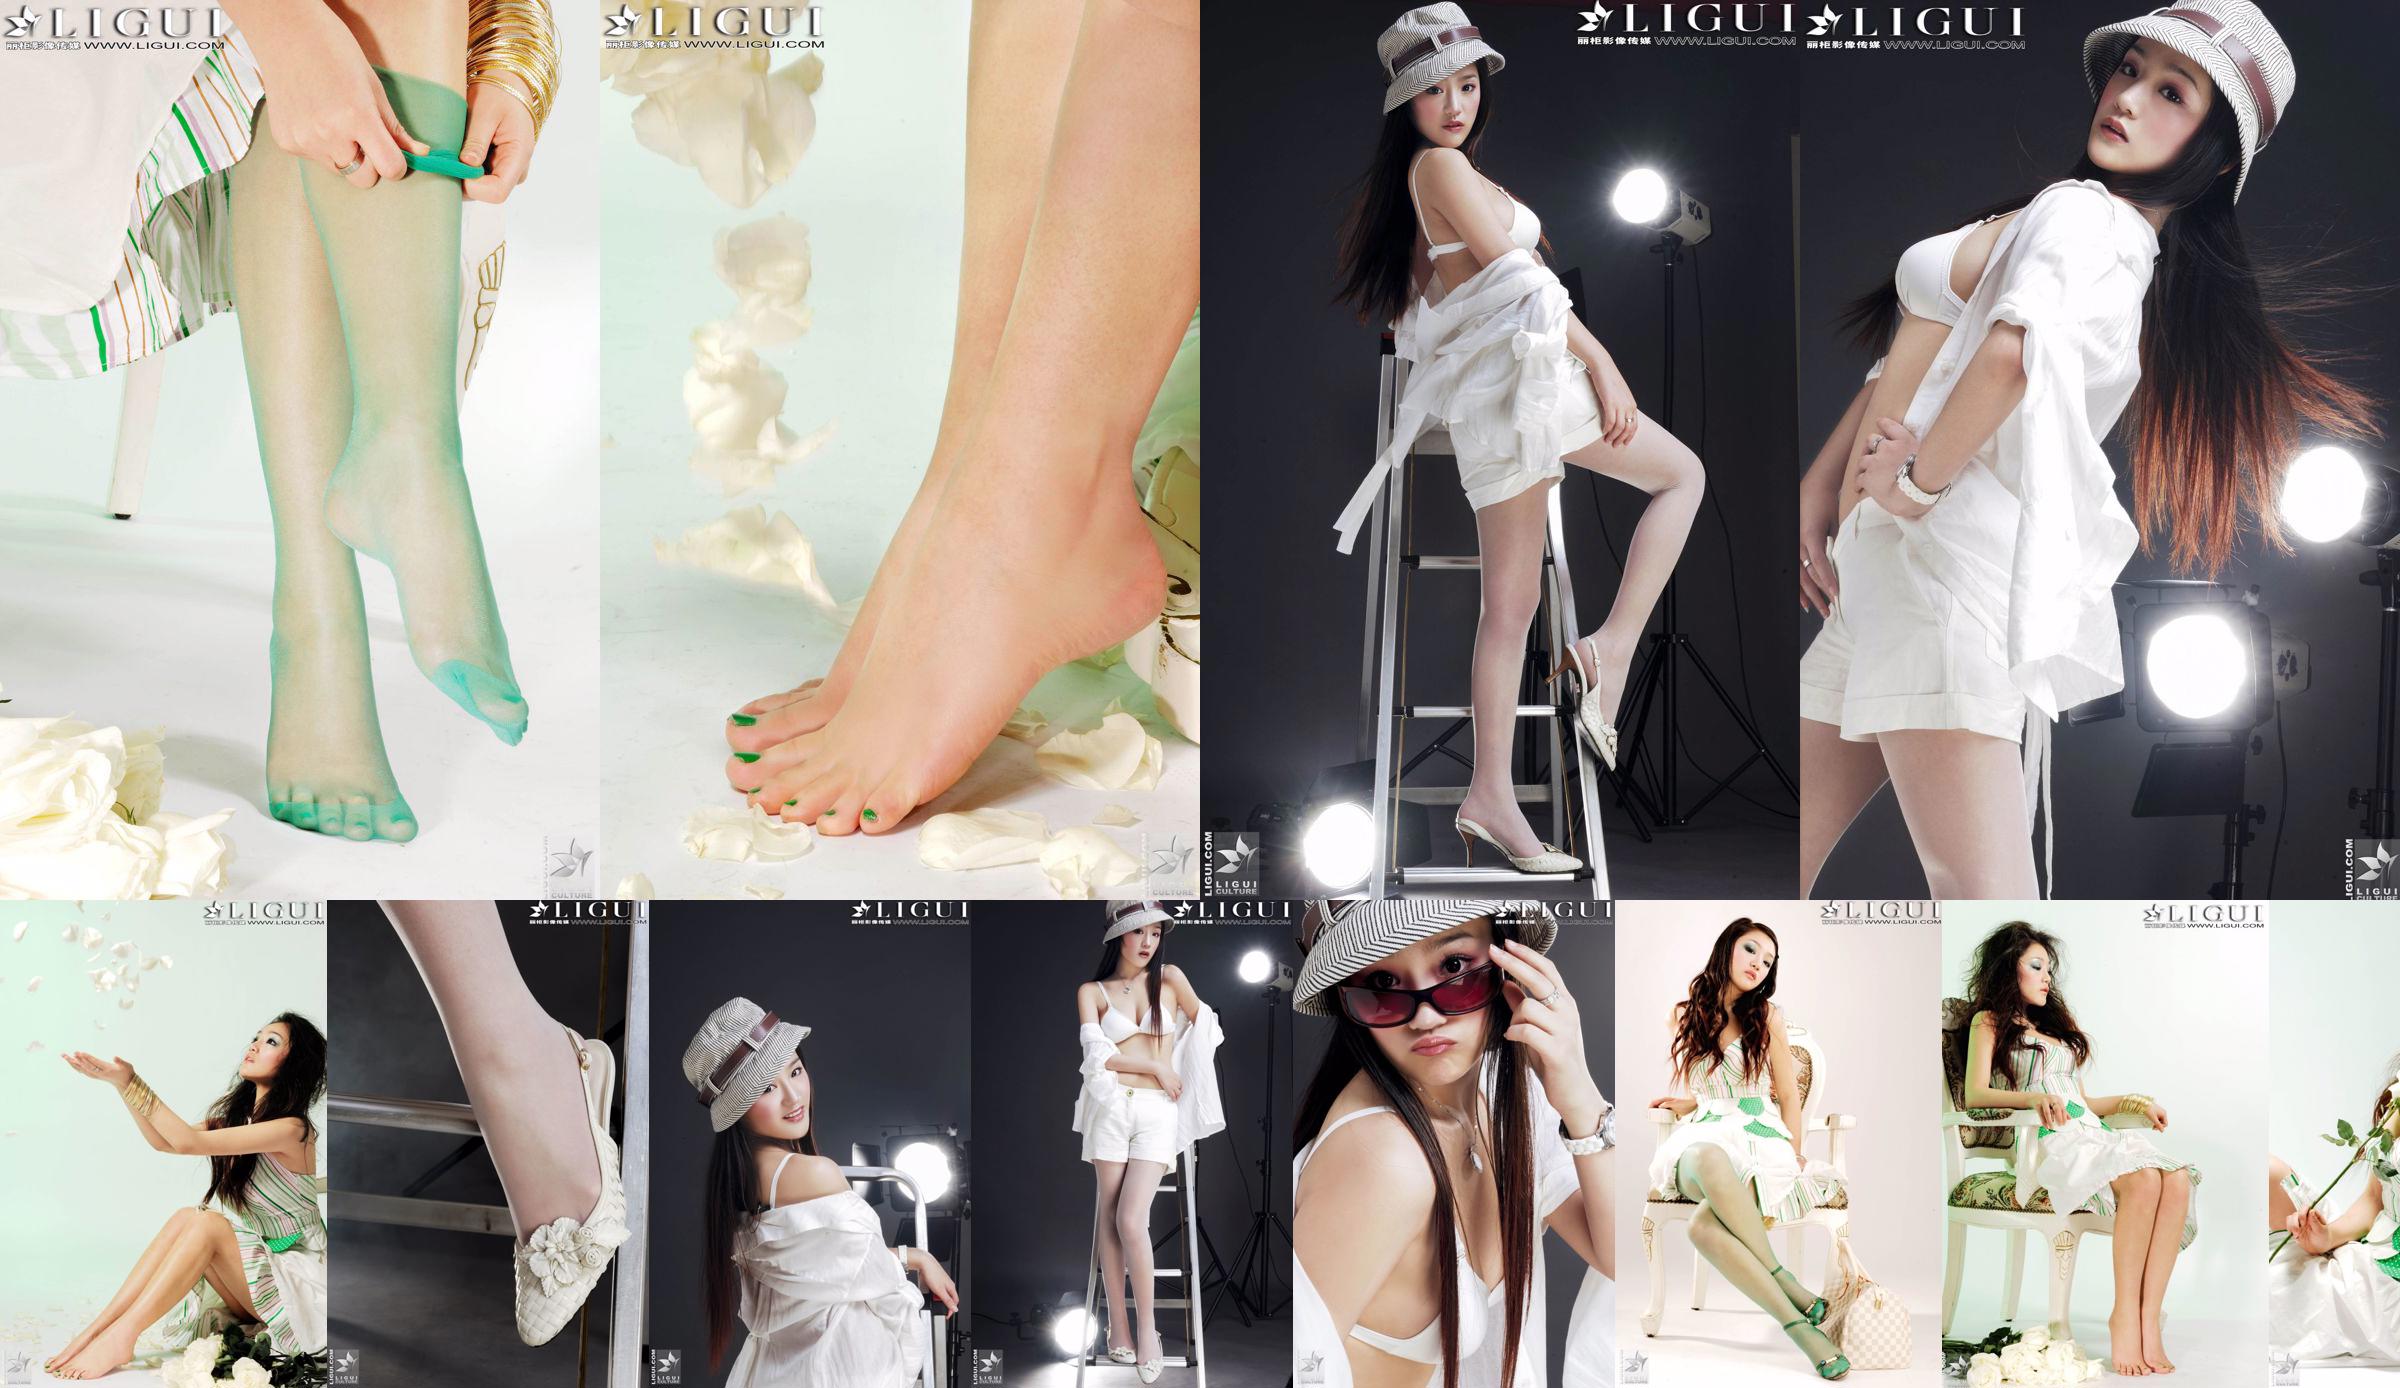 [丽 柜 贵 foot LiGui] Foto "Fashionable Foot" milik Model Zhang Jingyan tentang kaki dan kaki sutra yang indah No.68390d Halaman 4